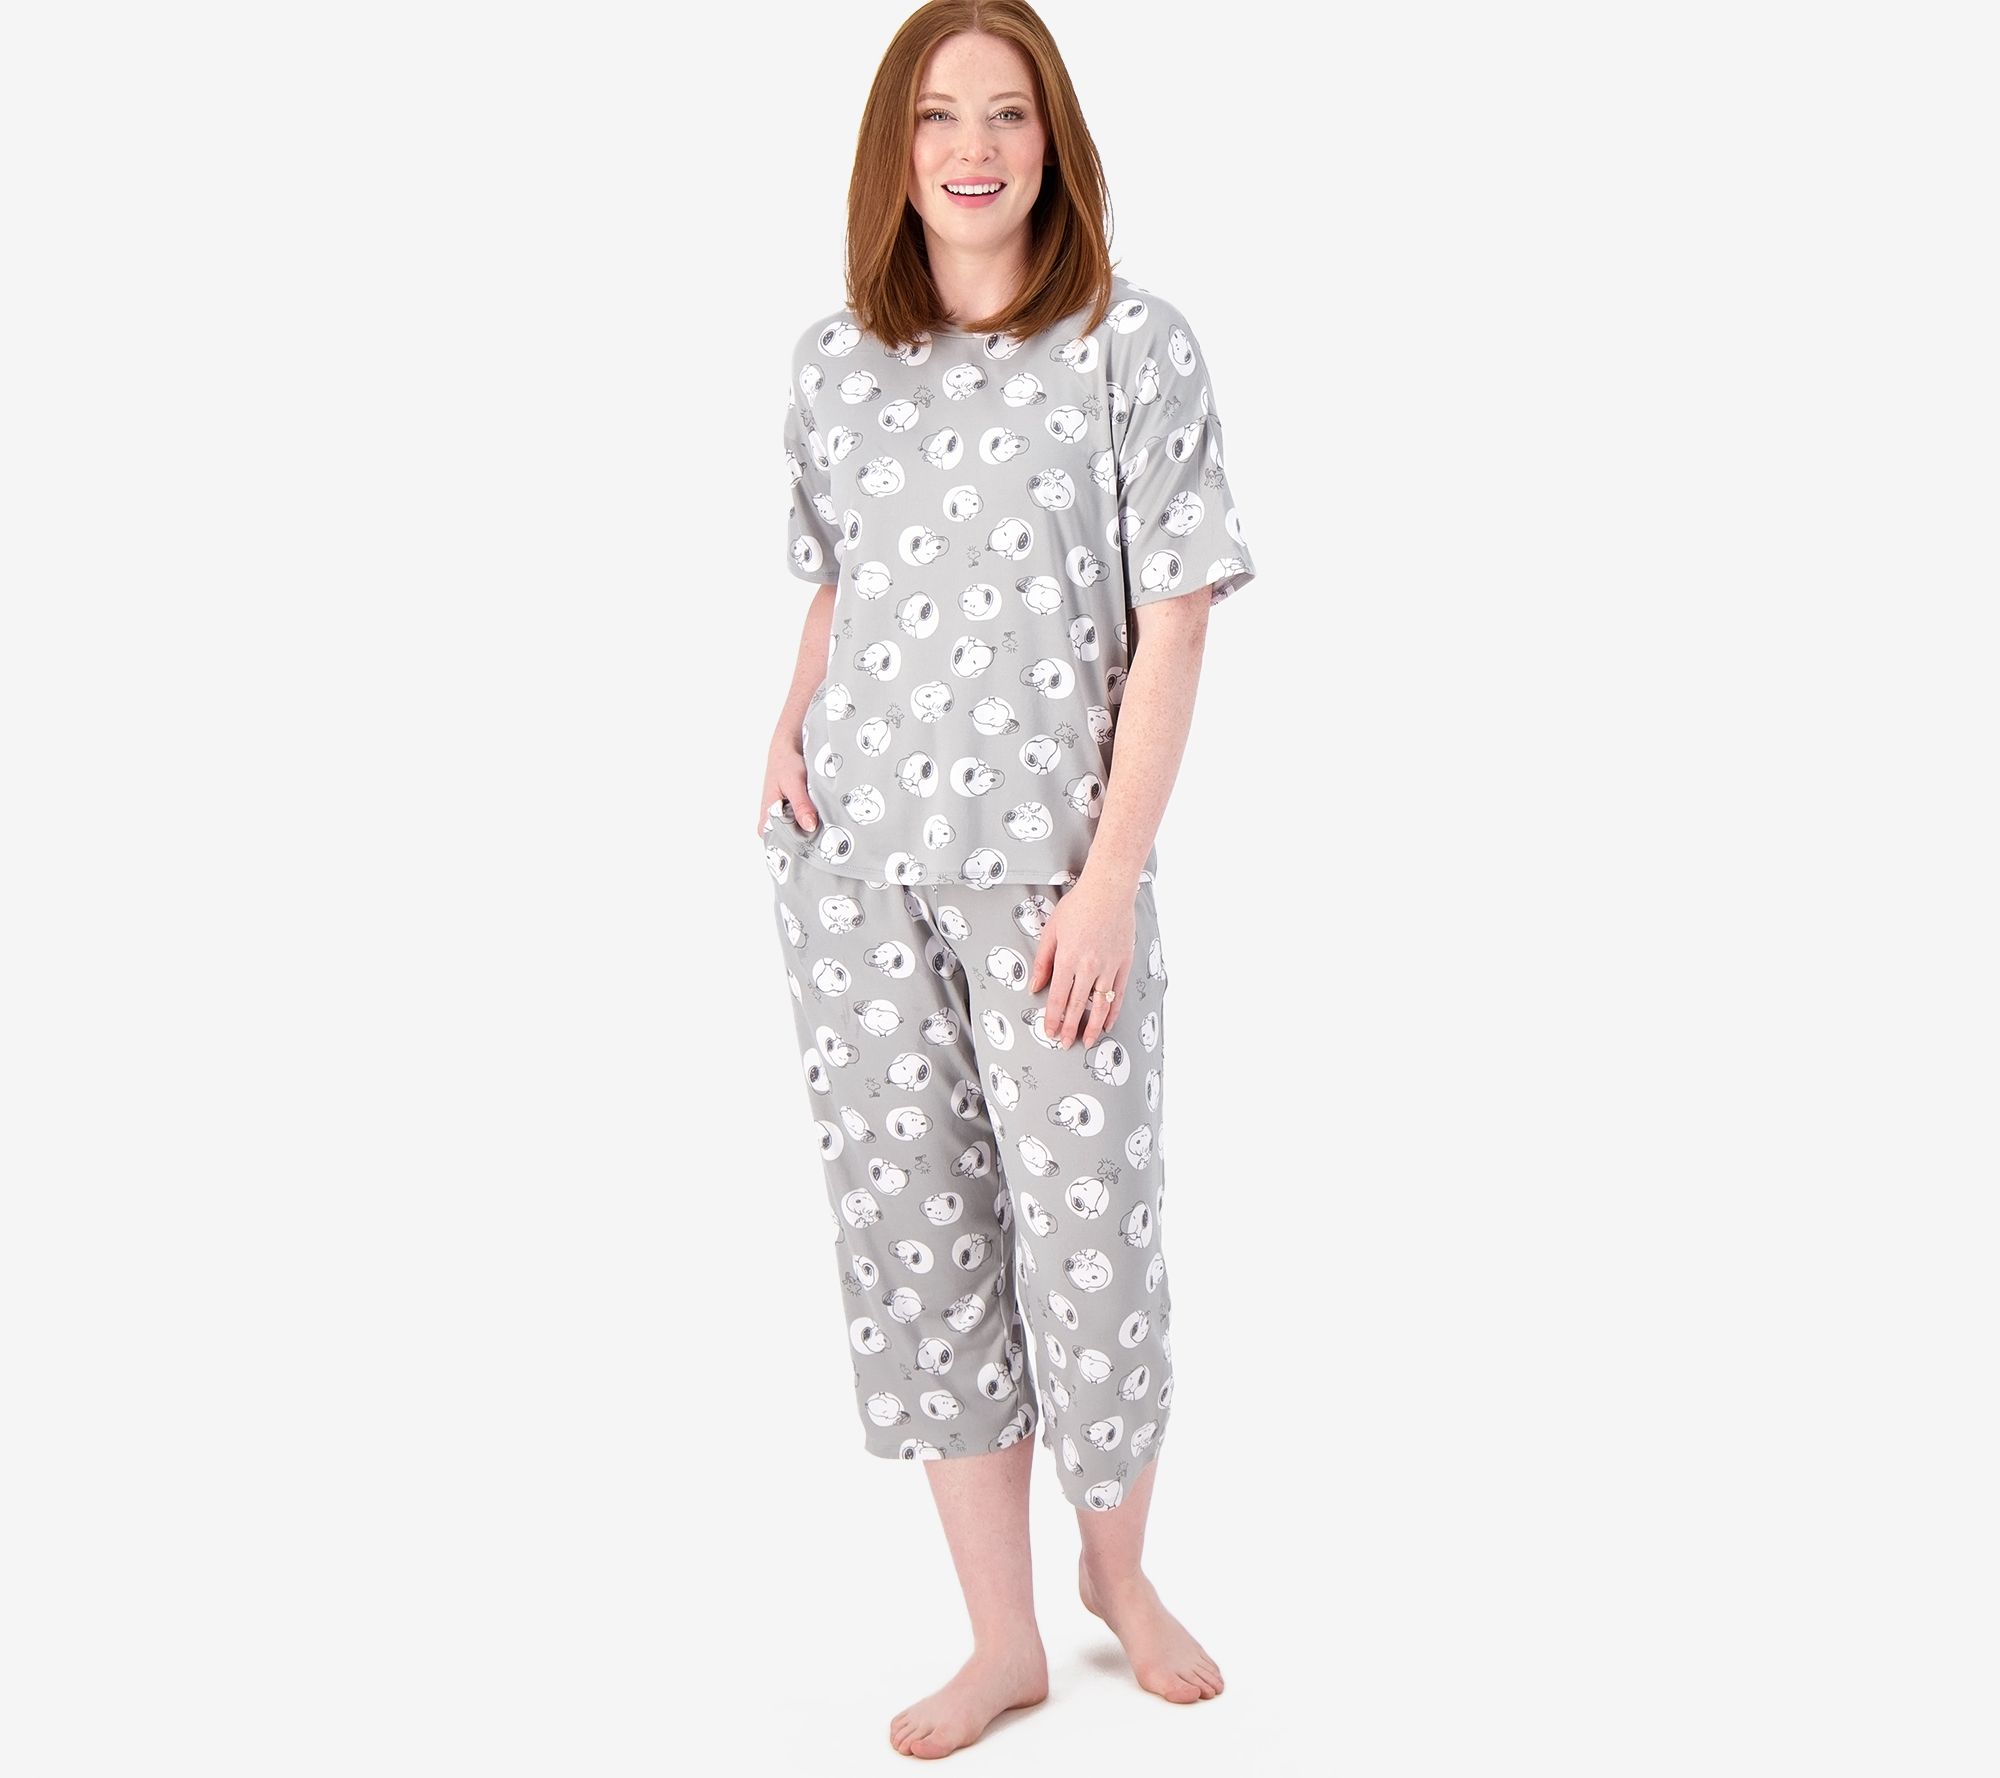 garment series: lenox pajama pants